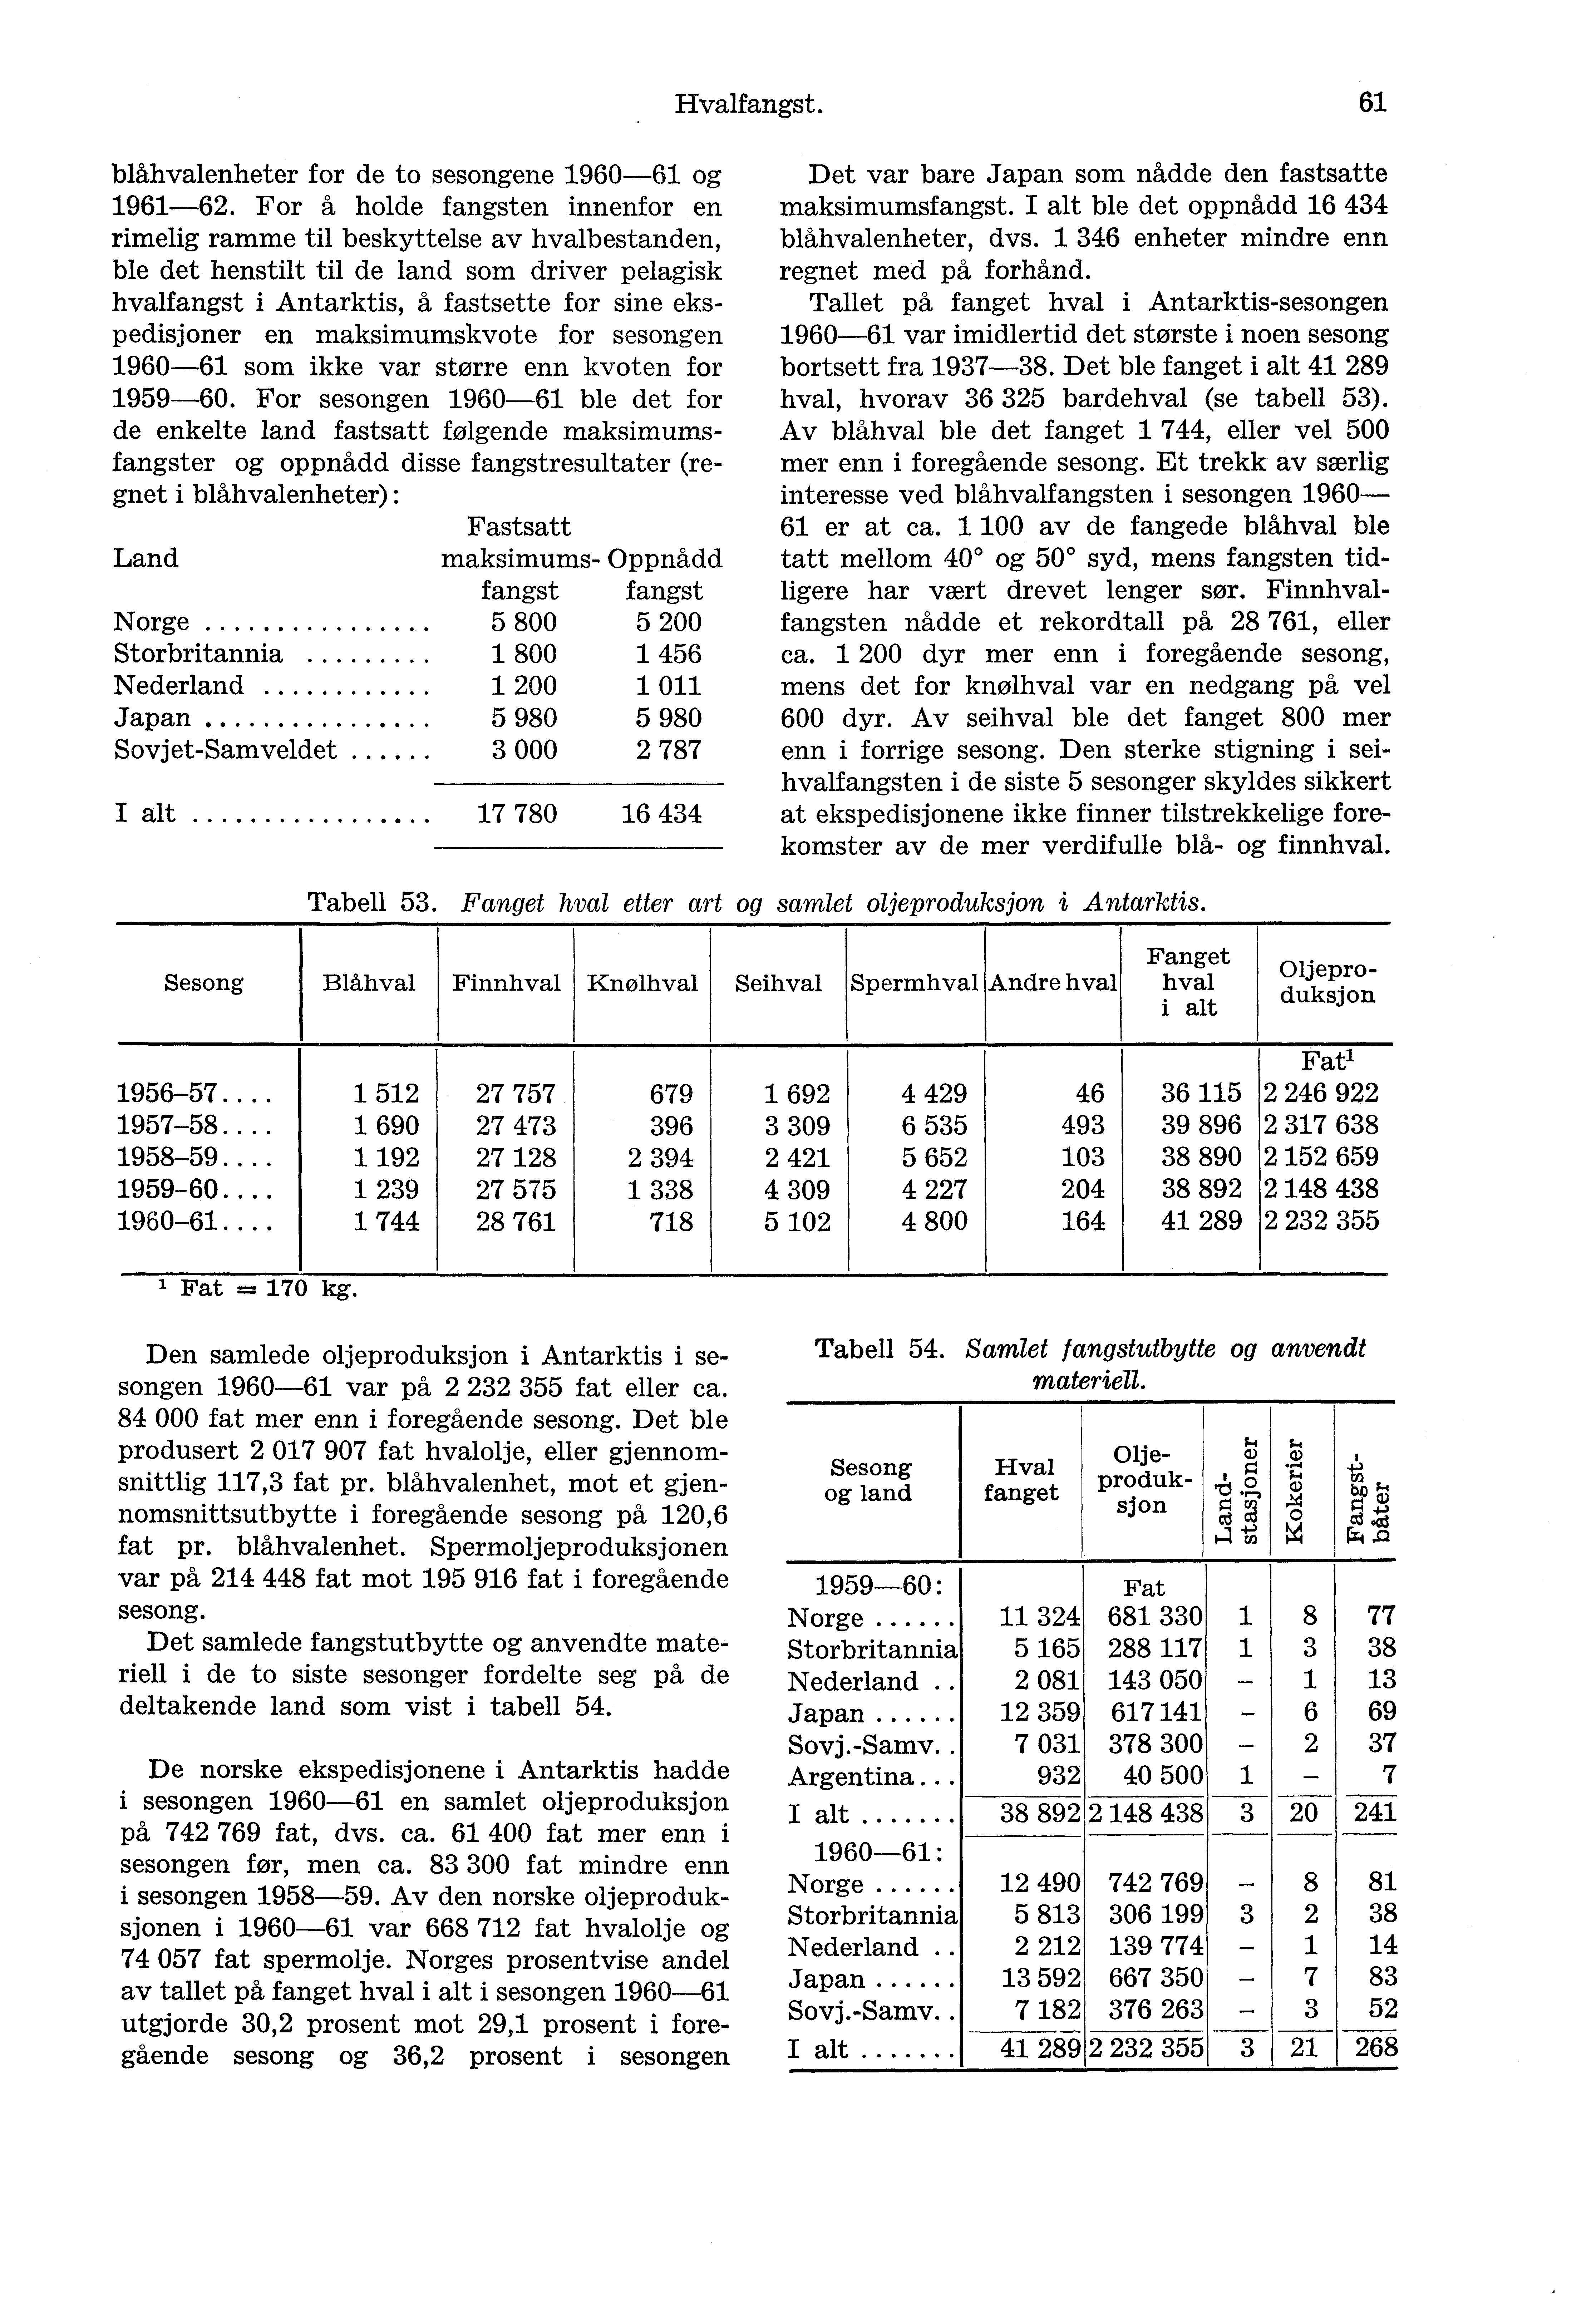 Hvalfangst. 61 blåhvalenheter for de to sesongene 1960-61 og 1961-62.